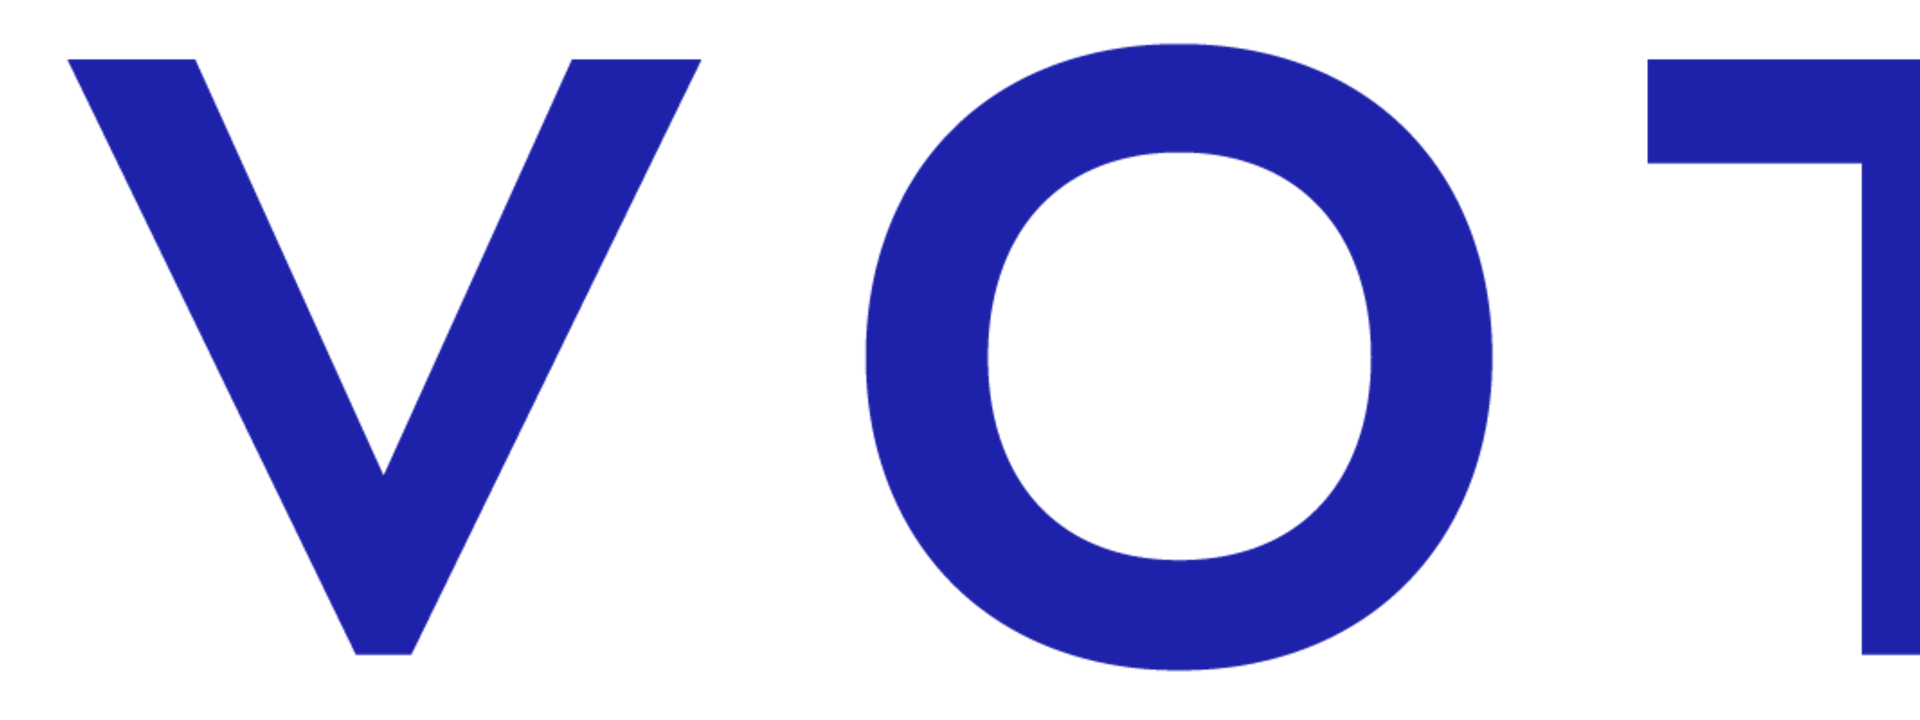 novotel_logo_2019_rvb_5.png